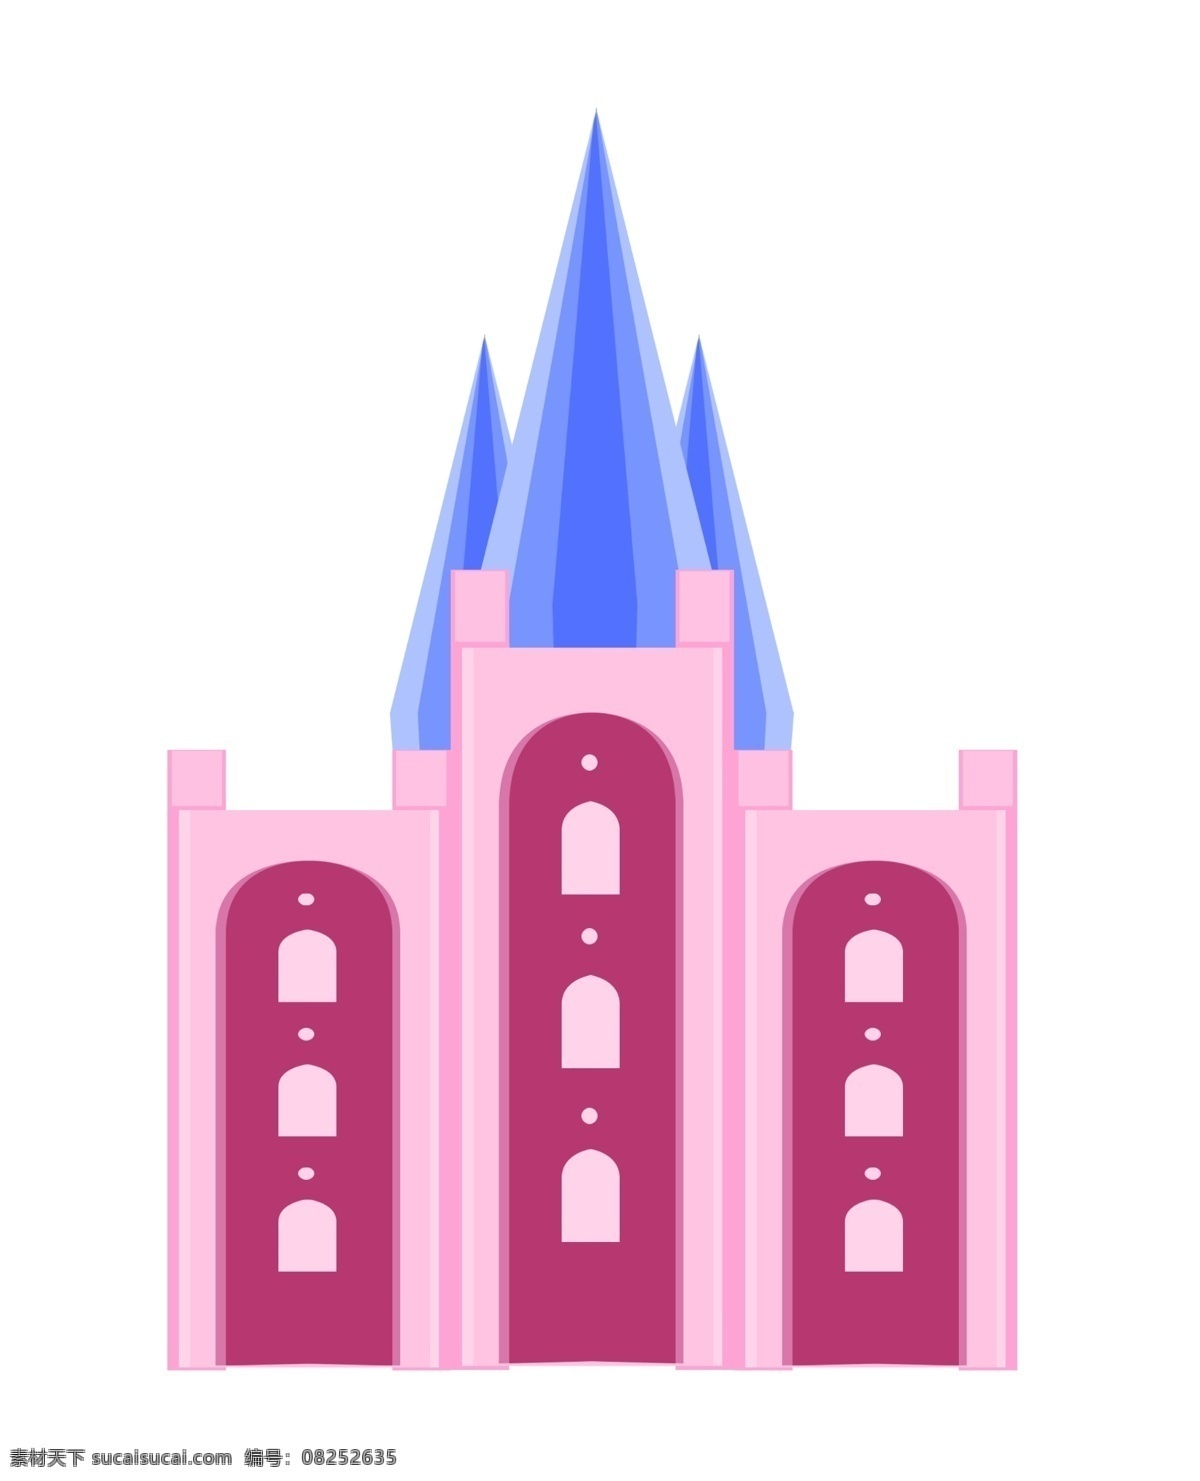 教堂 建筑 城堡 插画 粉色的围墙 卡通插画 建筑插画 城堡插画 异域风情 城堡建筑 教堂式建筑